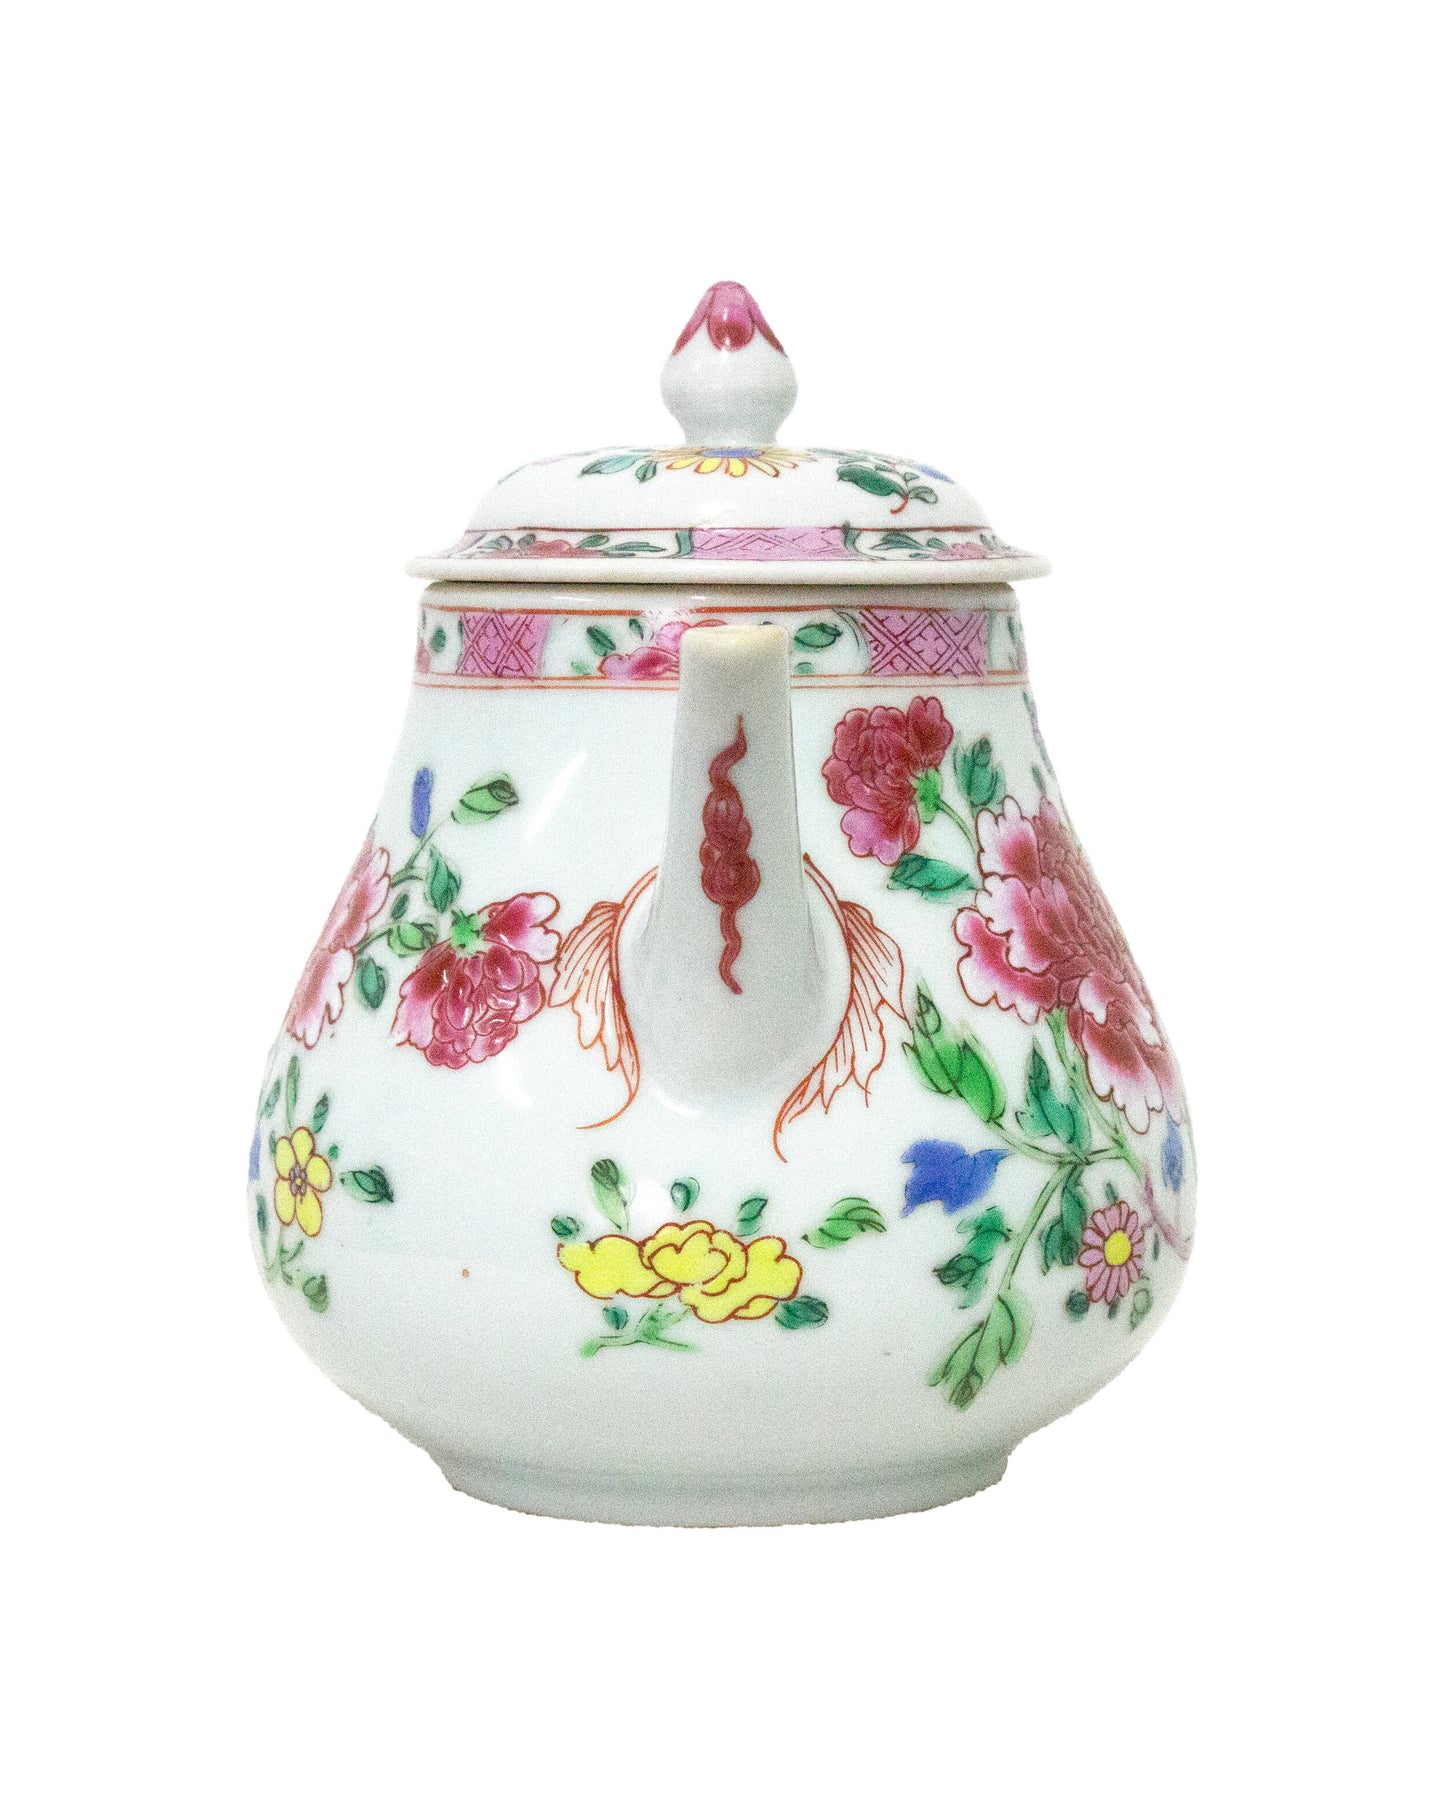 Teapot, Yongzheng (1723-1735)